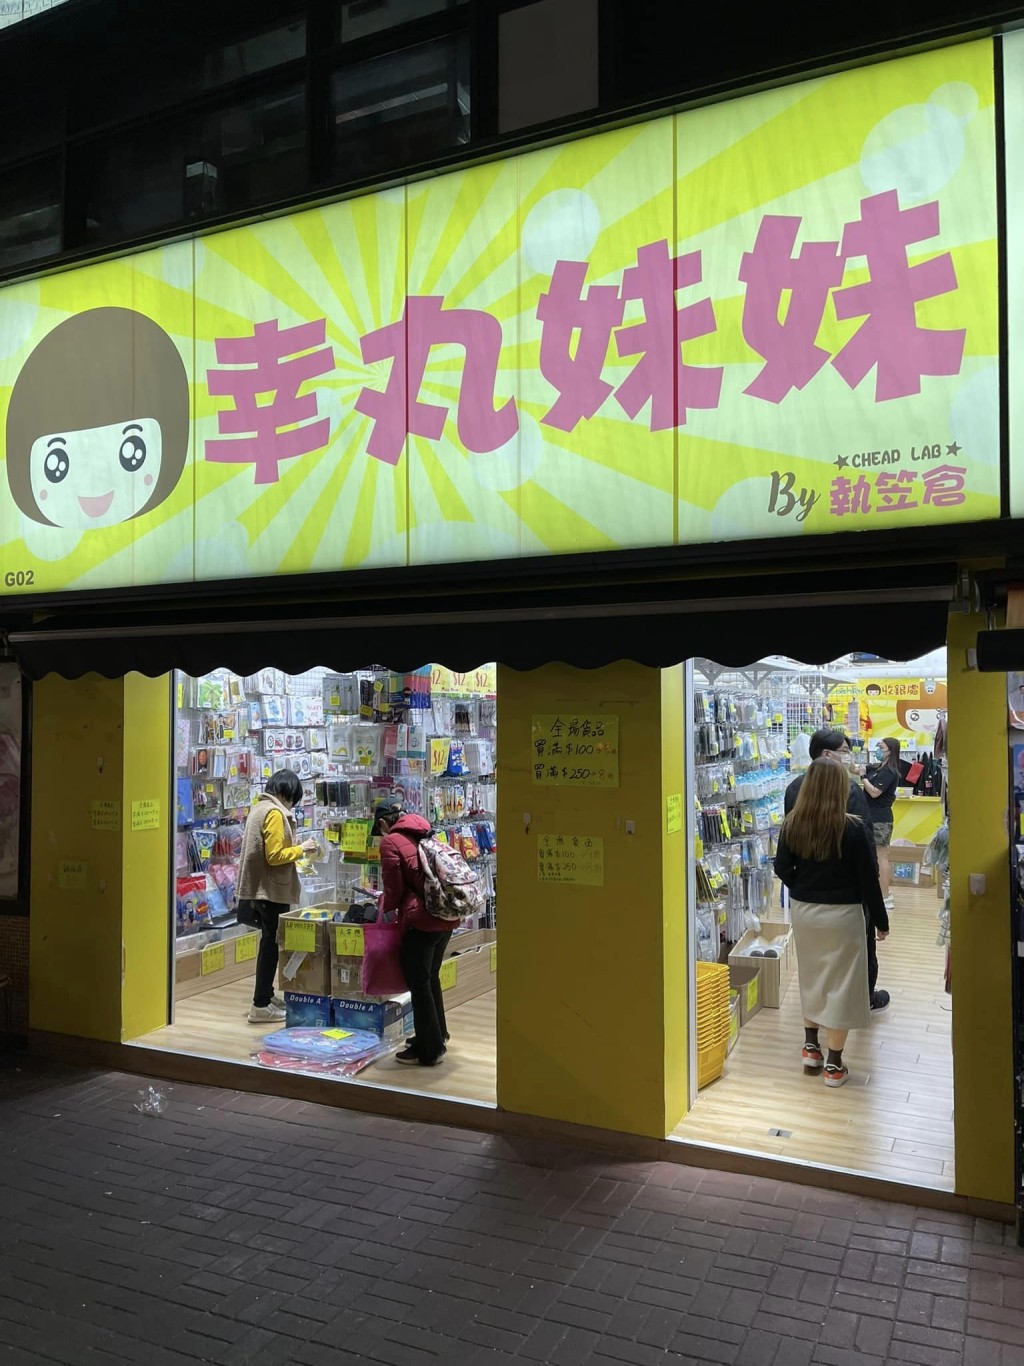 執笠倉葵芳店決定將於2月18日結束結業，場內現正進行清貨大特賣。